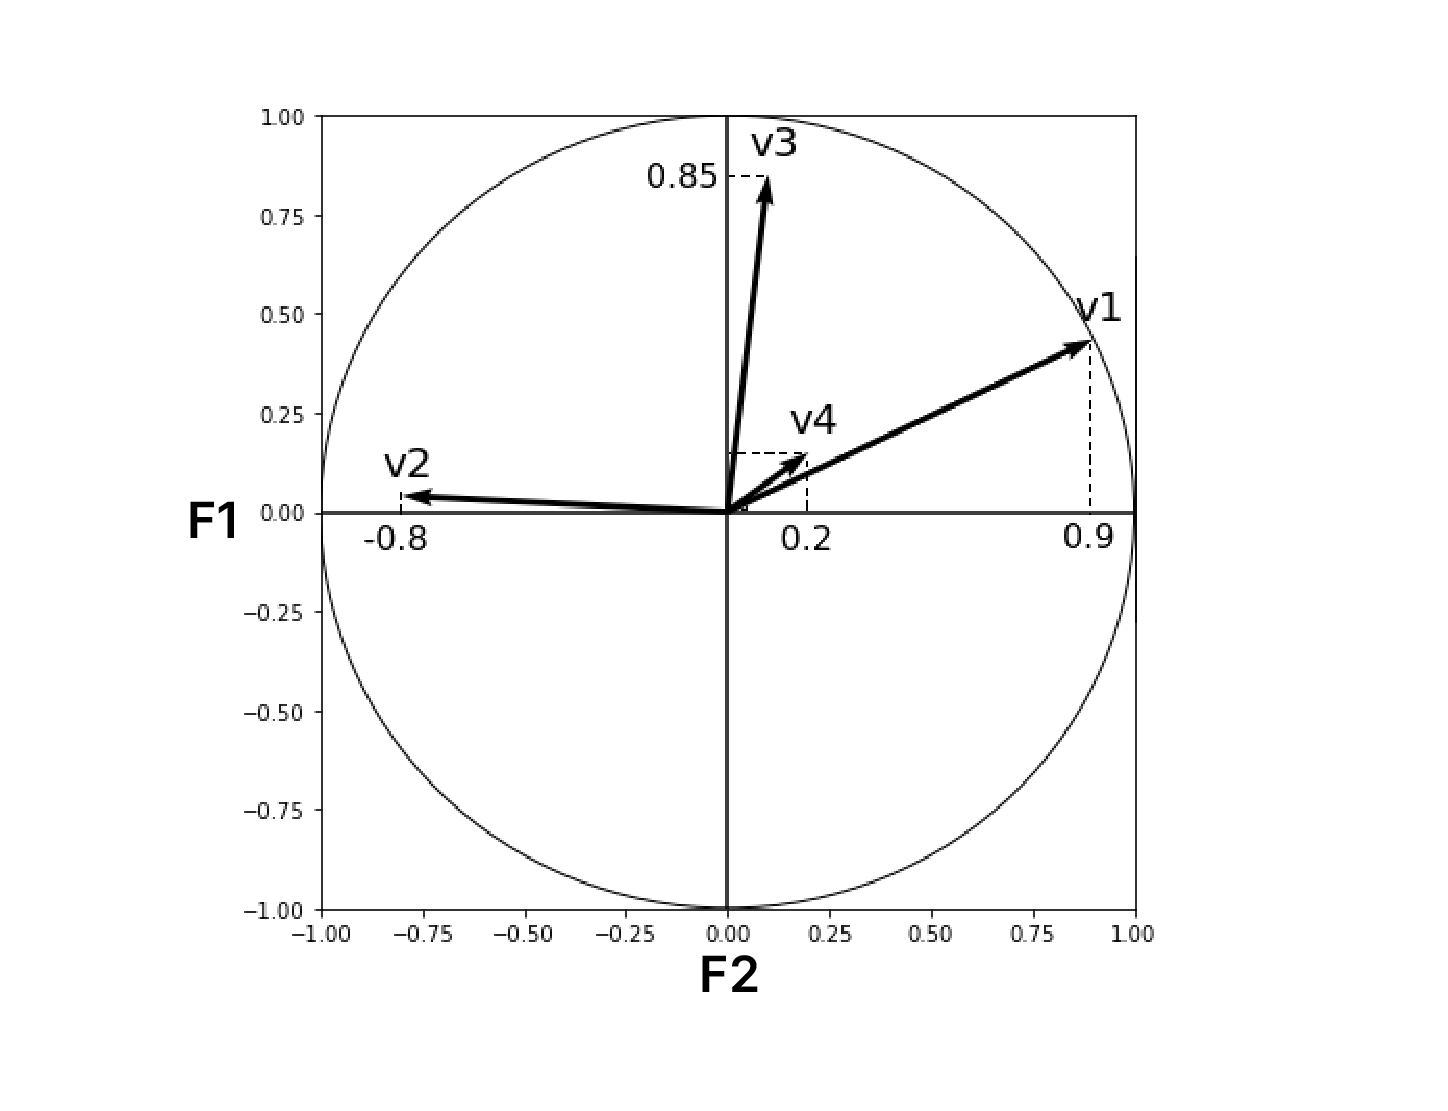 On y voit un cercle, de rayon 1. L’axe des abscisses représente le premier axe d'inertie. L’axe des ordonnées représente F2 .  À l’intérieur du cercle, il y a des flèches qui partent du centre. Elles sont plus ou moins grandes, et peuvent alle